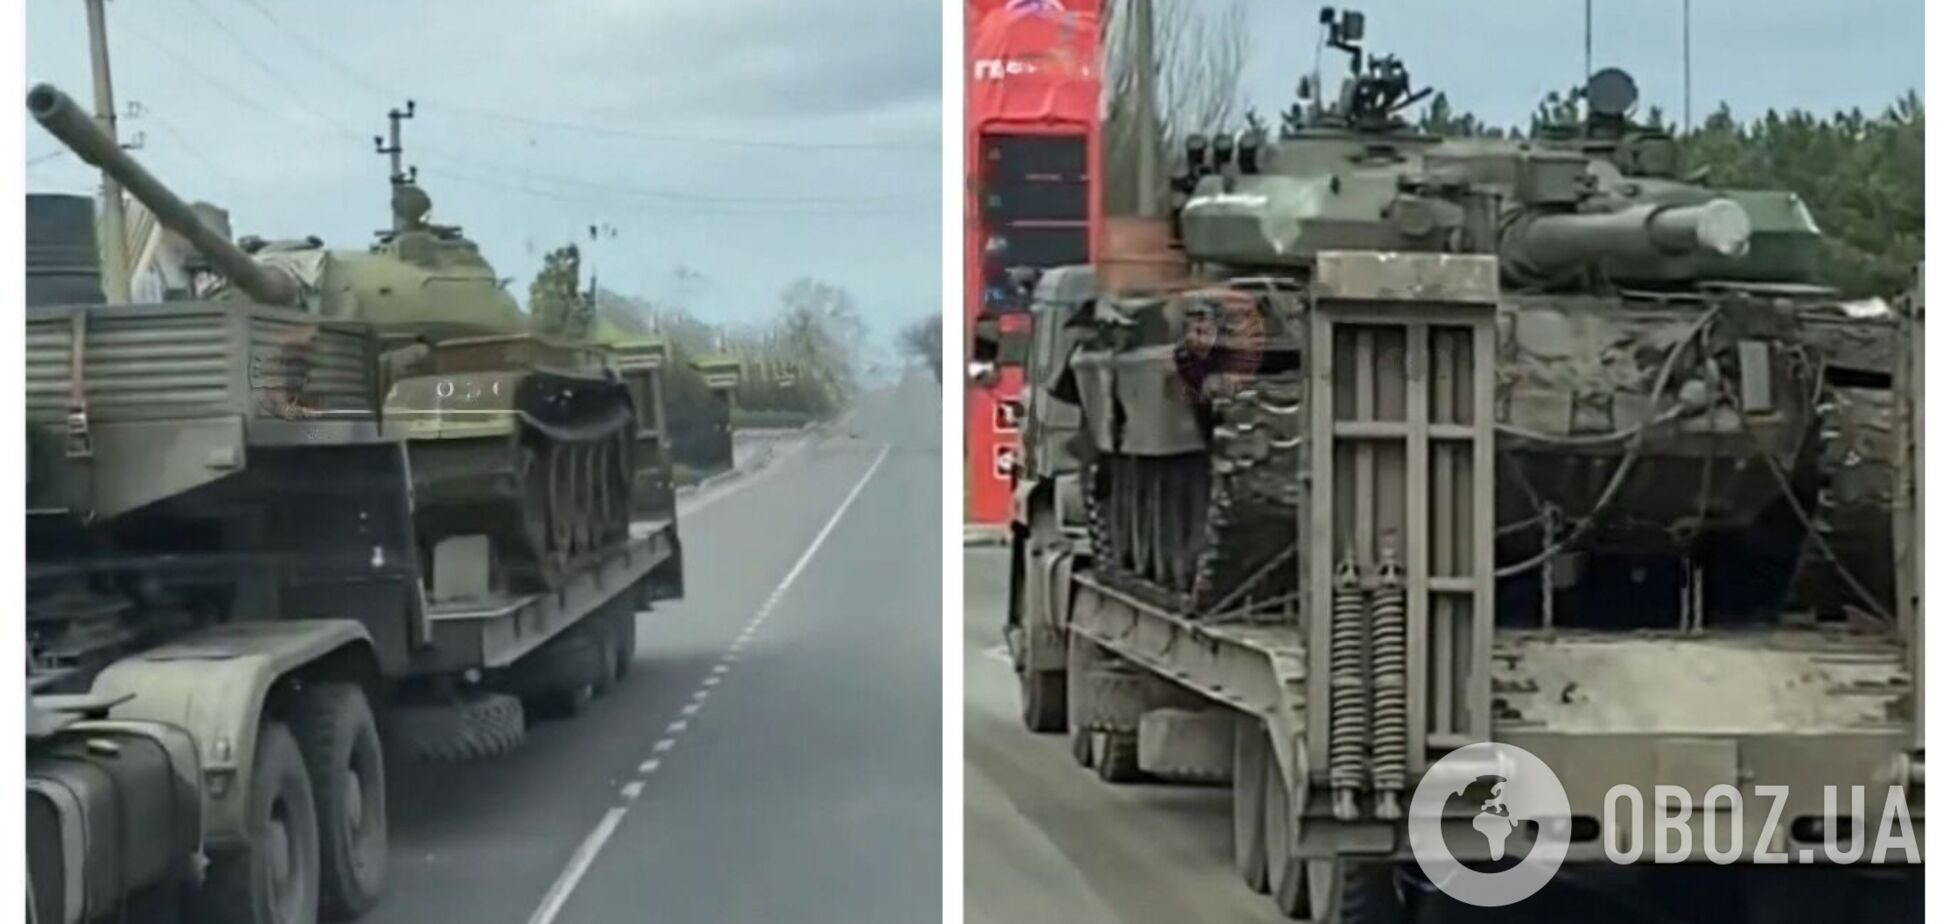 'Трепещите, Леопарды': оккупанты продолжают позориться, стягивая в Украину древние танки